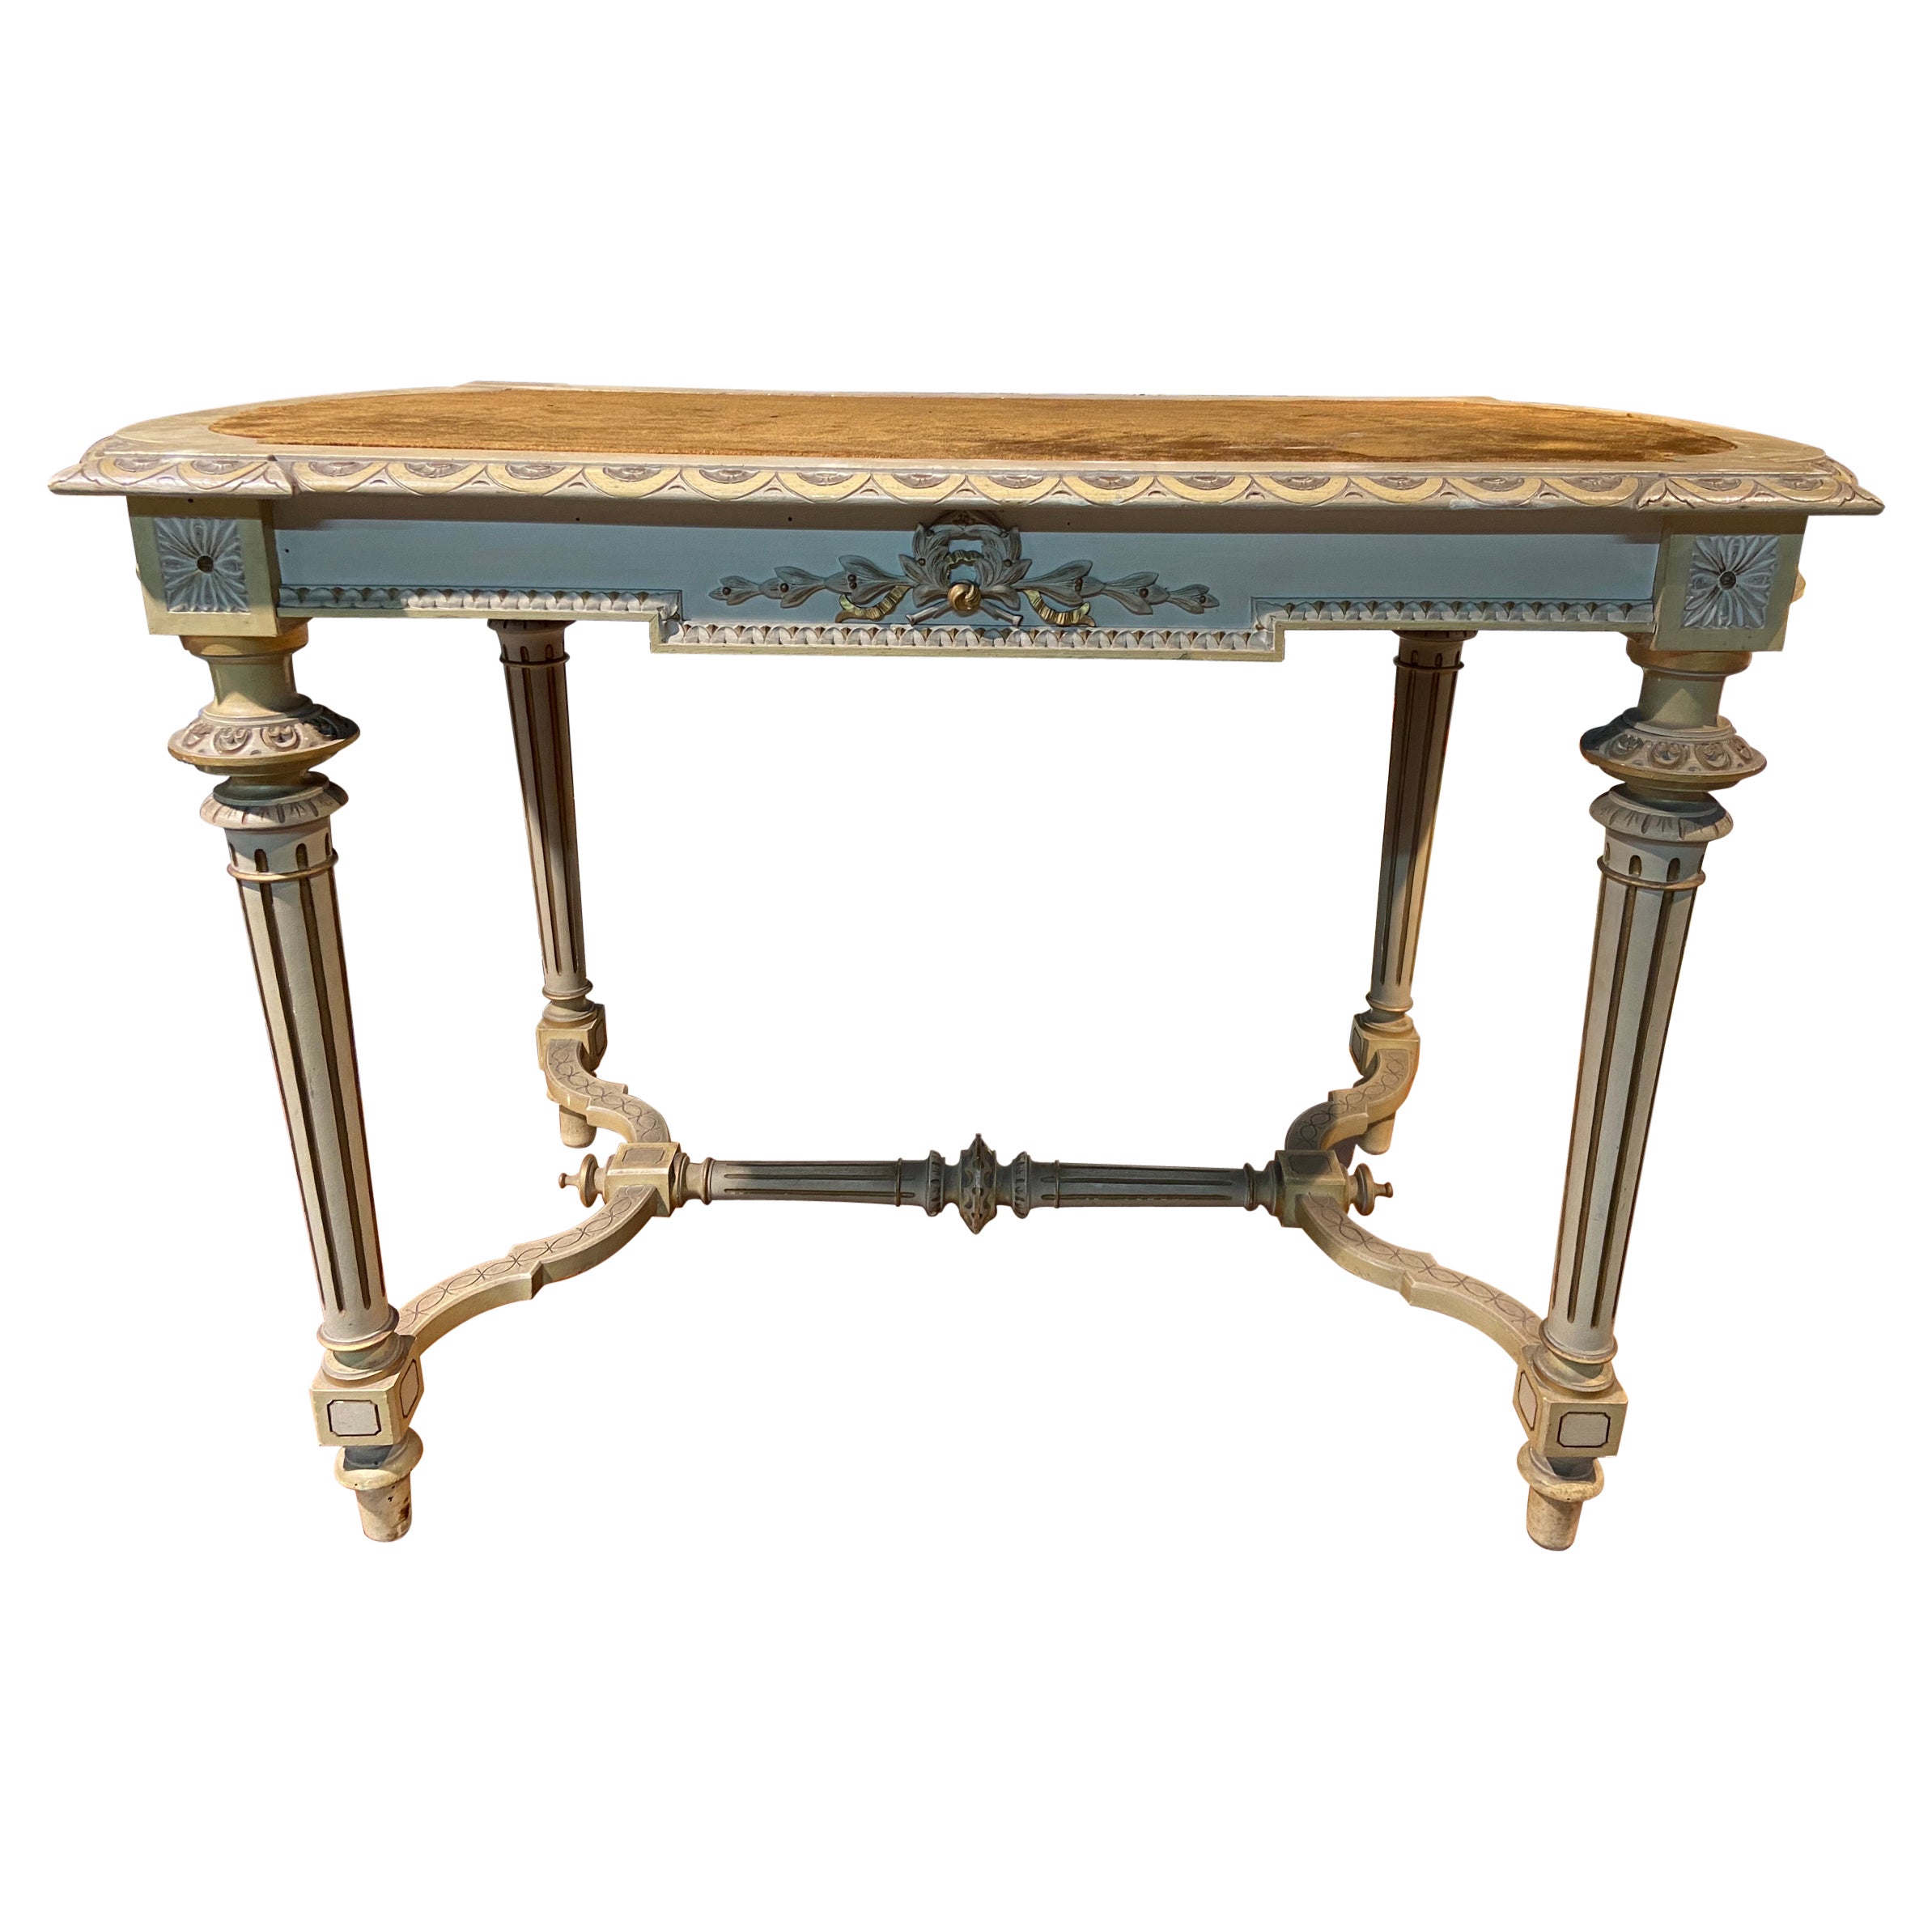 Table à écrire française du 20e siècle sculptée et peinte à la main dans le style Louise XVI